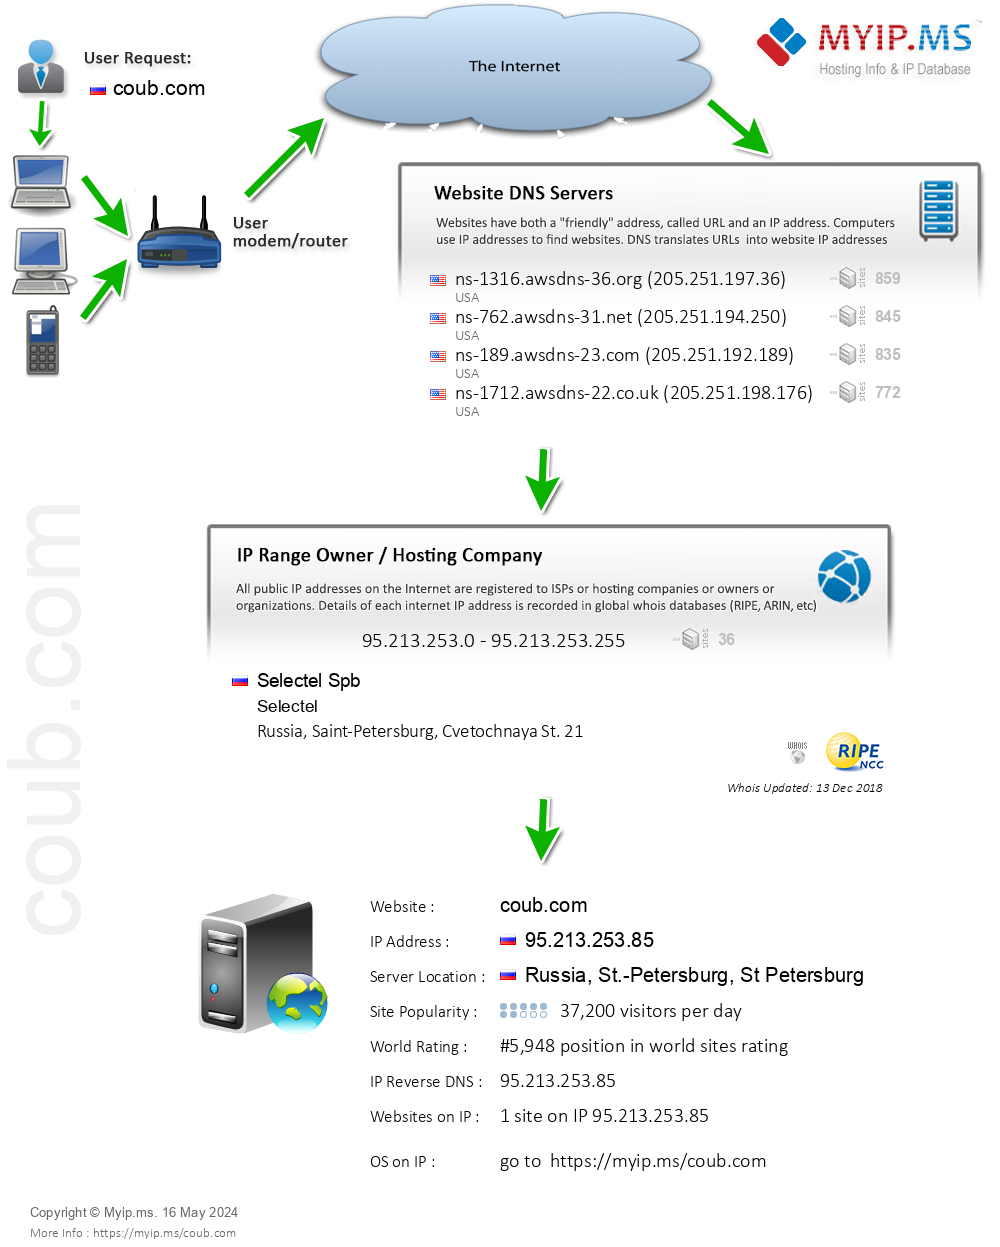 Coub.com - Website Hosting Visual IP Diagram